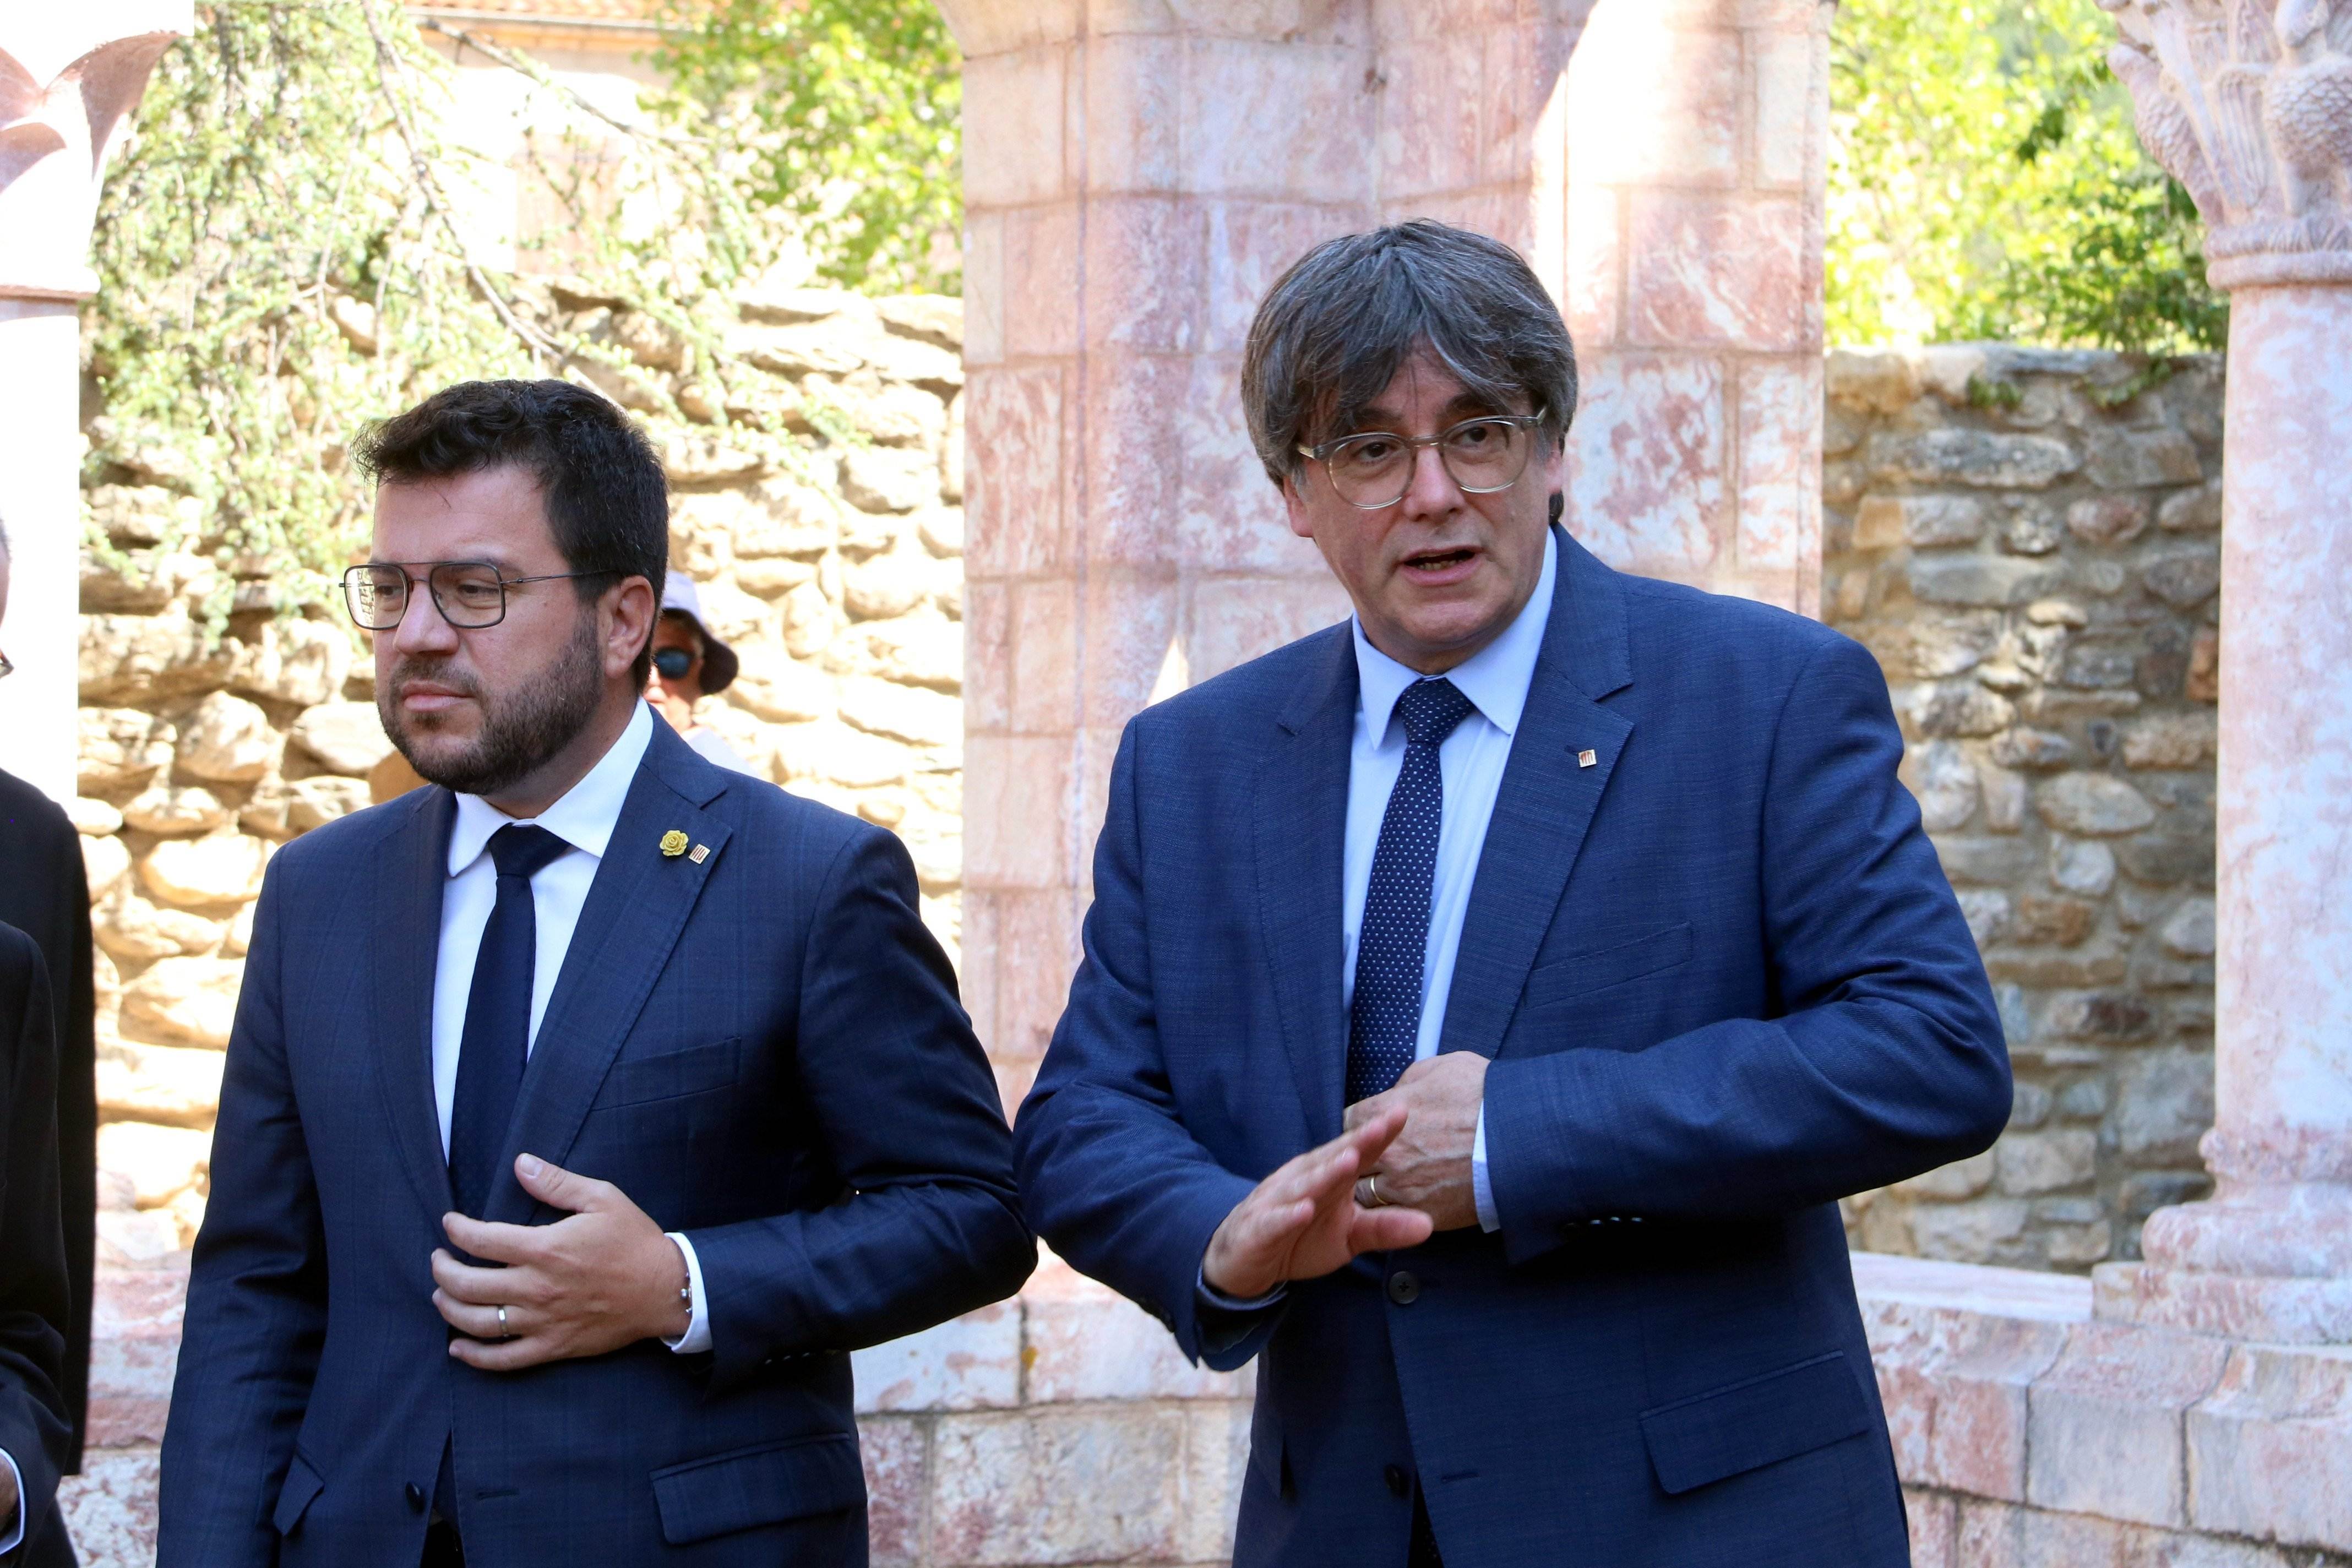 Pere Aragonès redobla l'aposta per l'amnistia davant Puigdemont